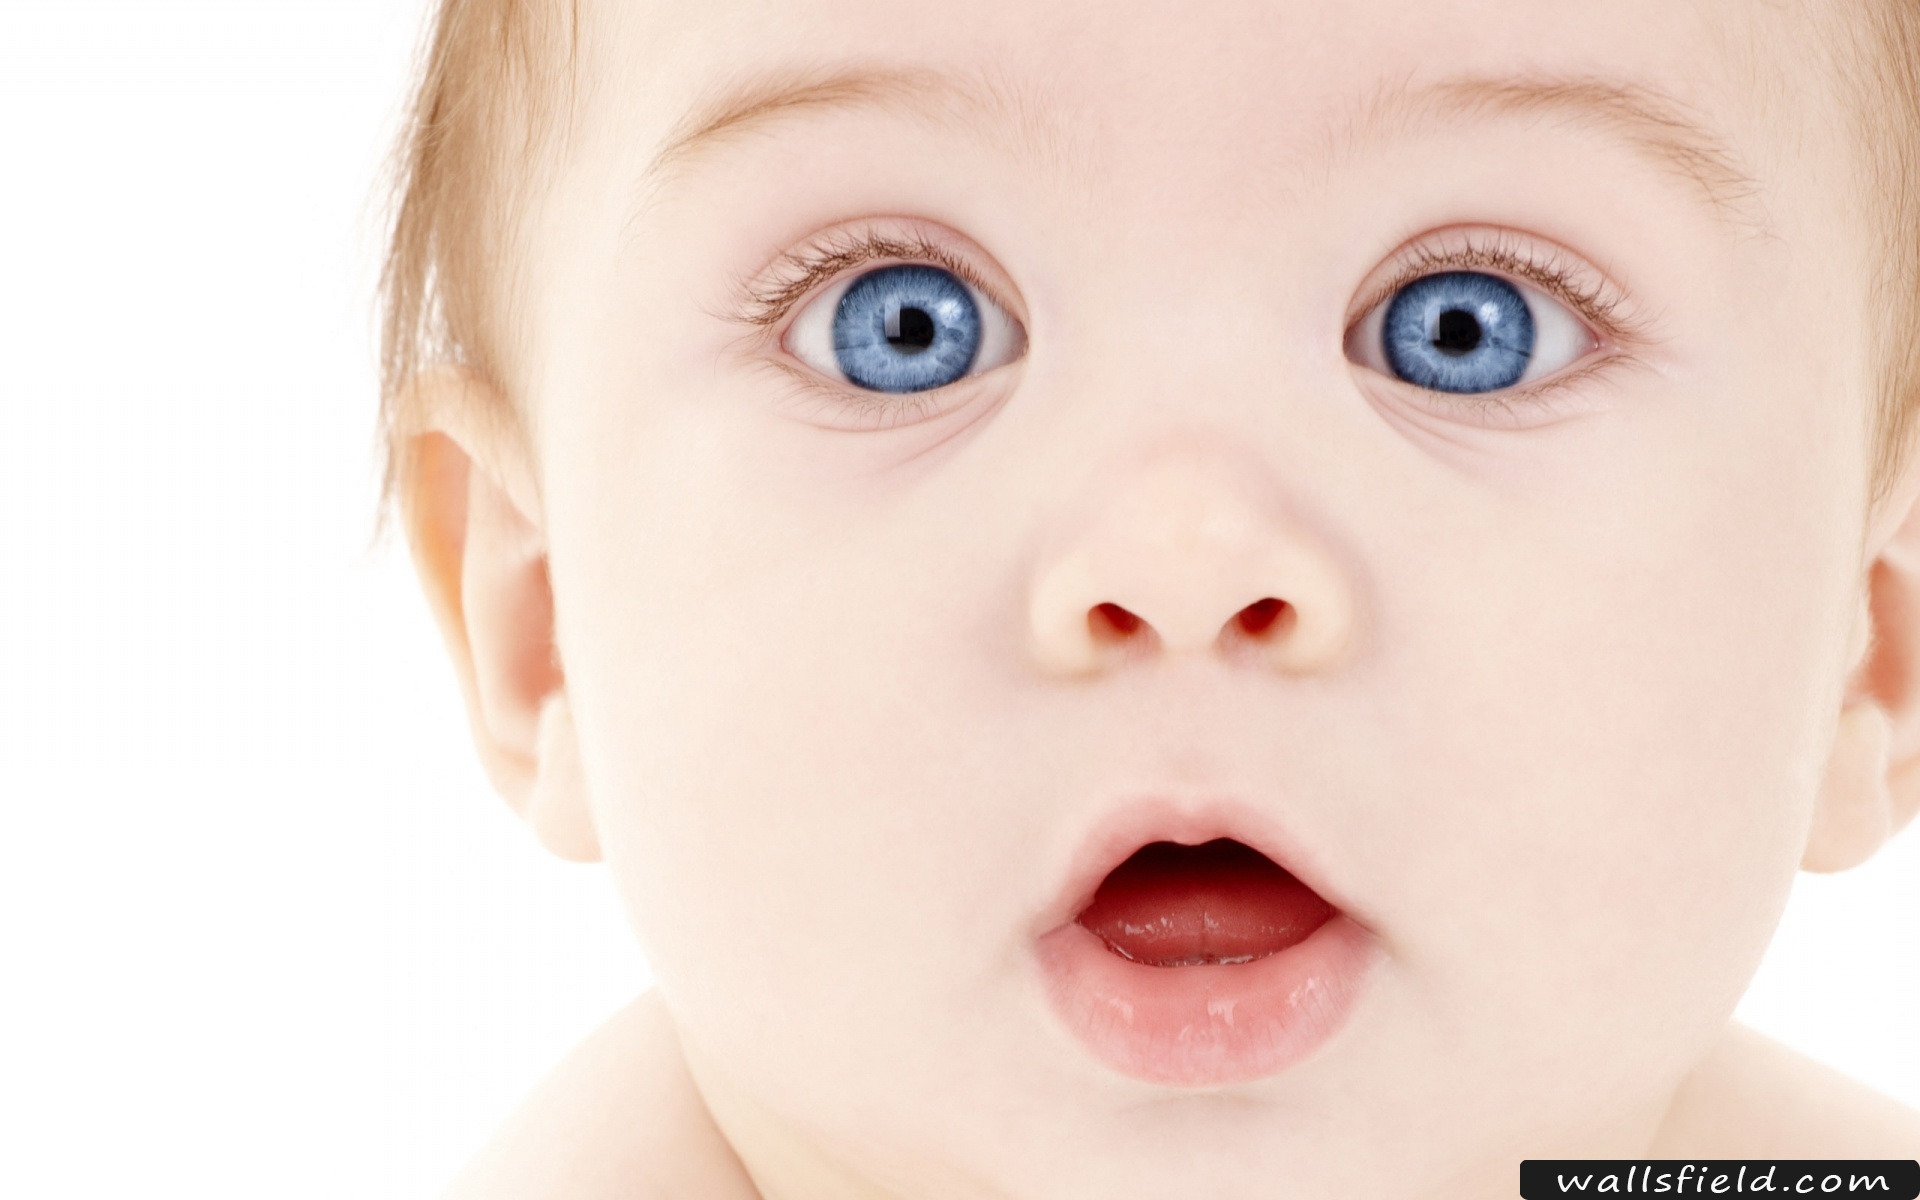 Newborn Blue Eye Cute Baby - HD Wallpaper 